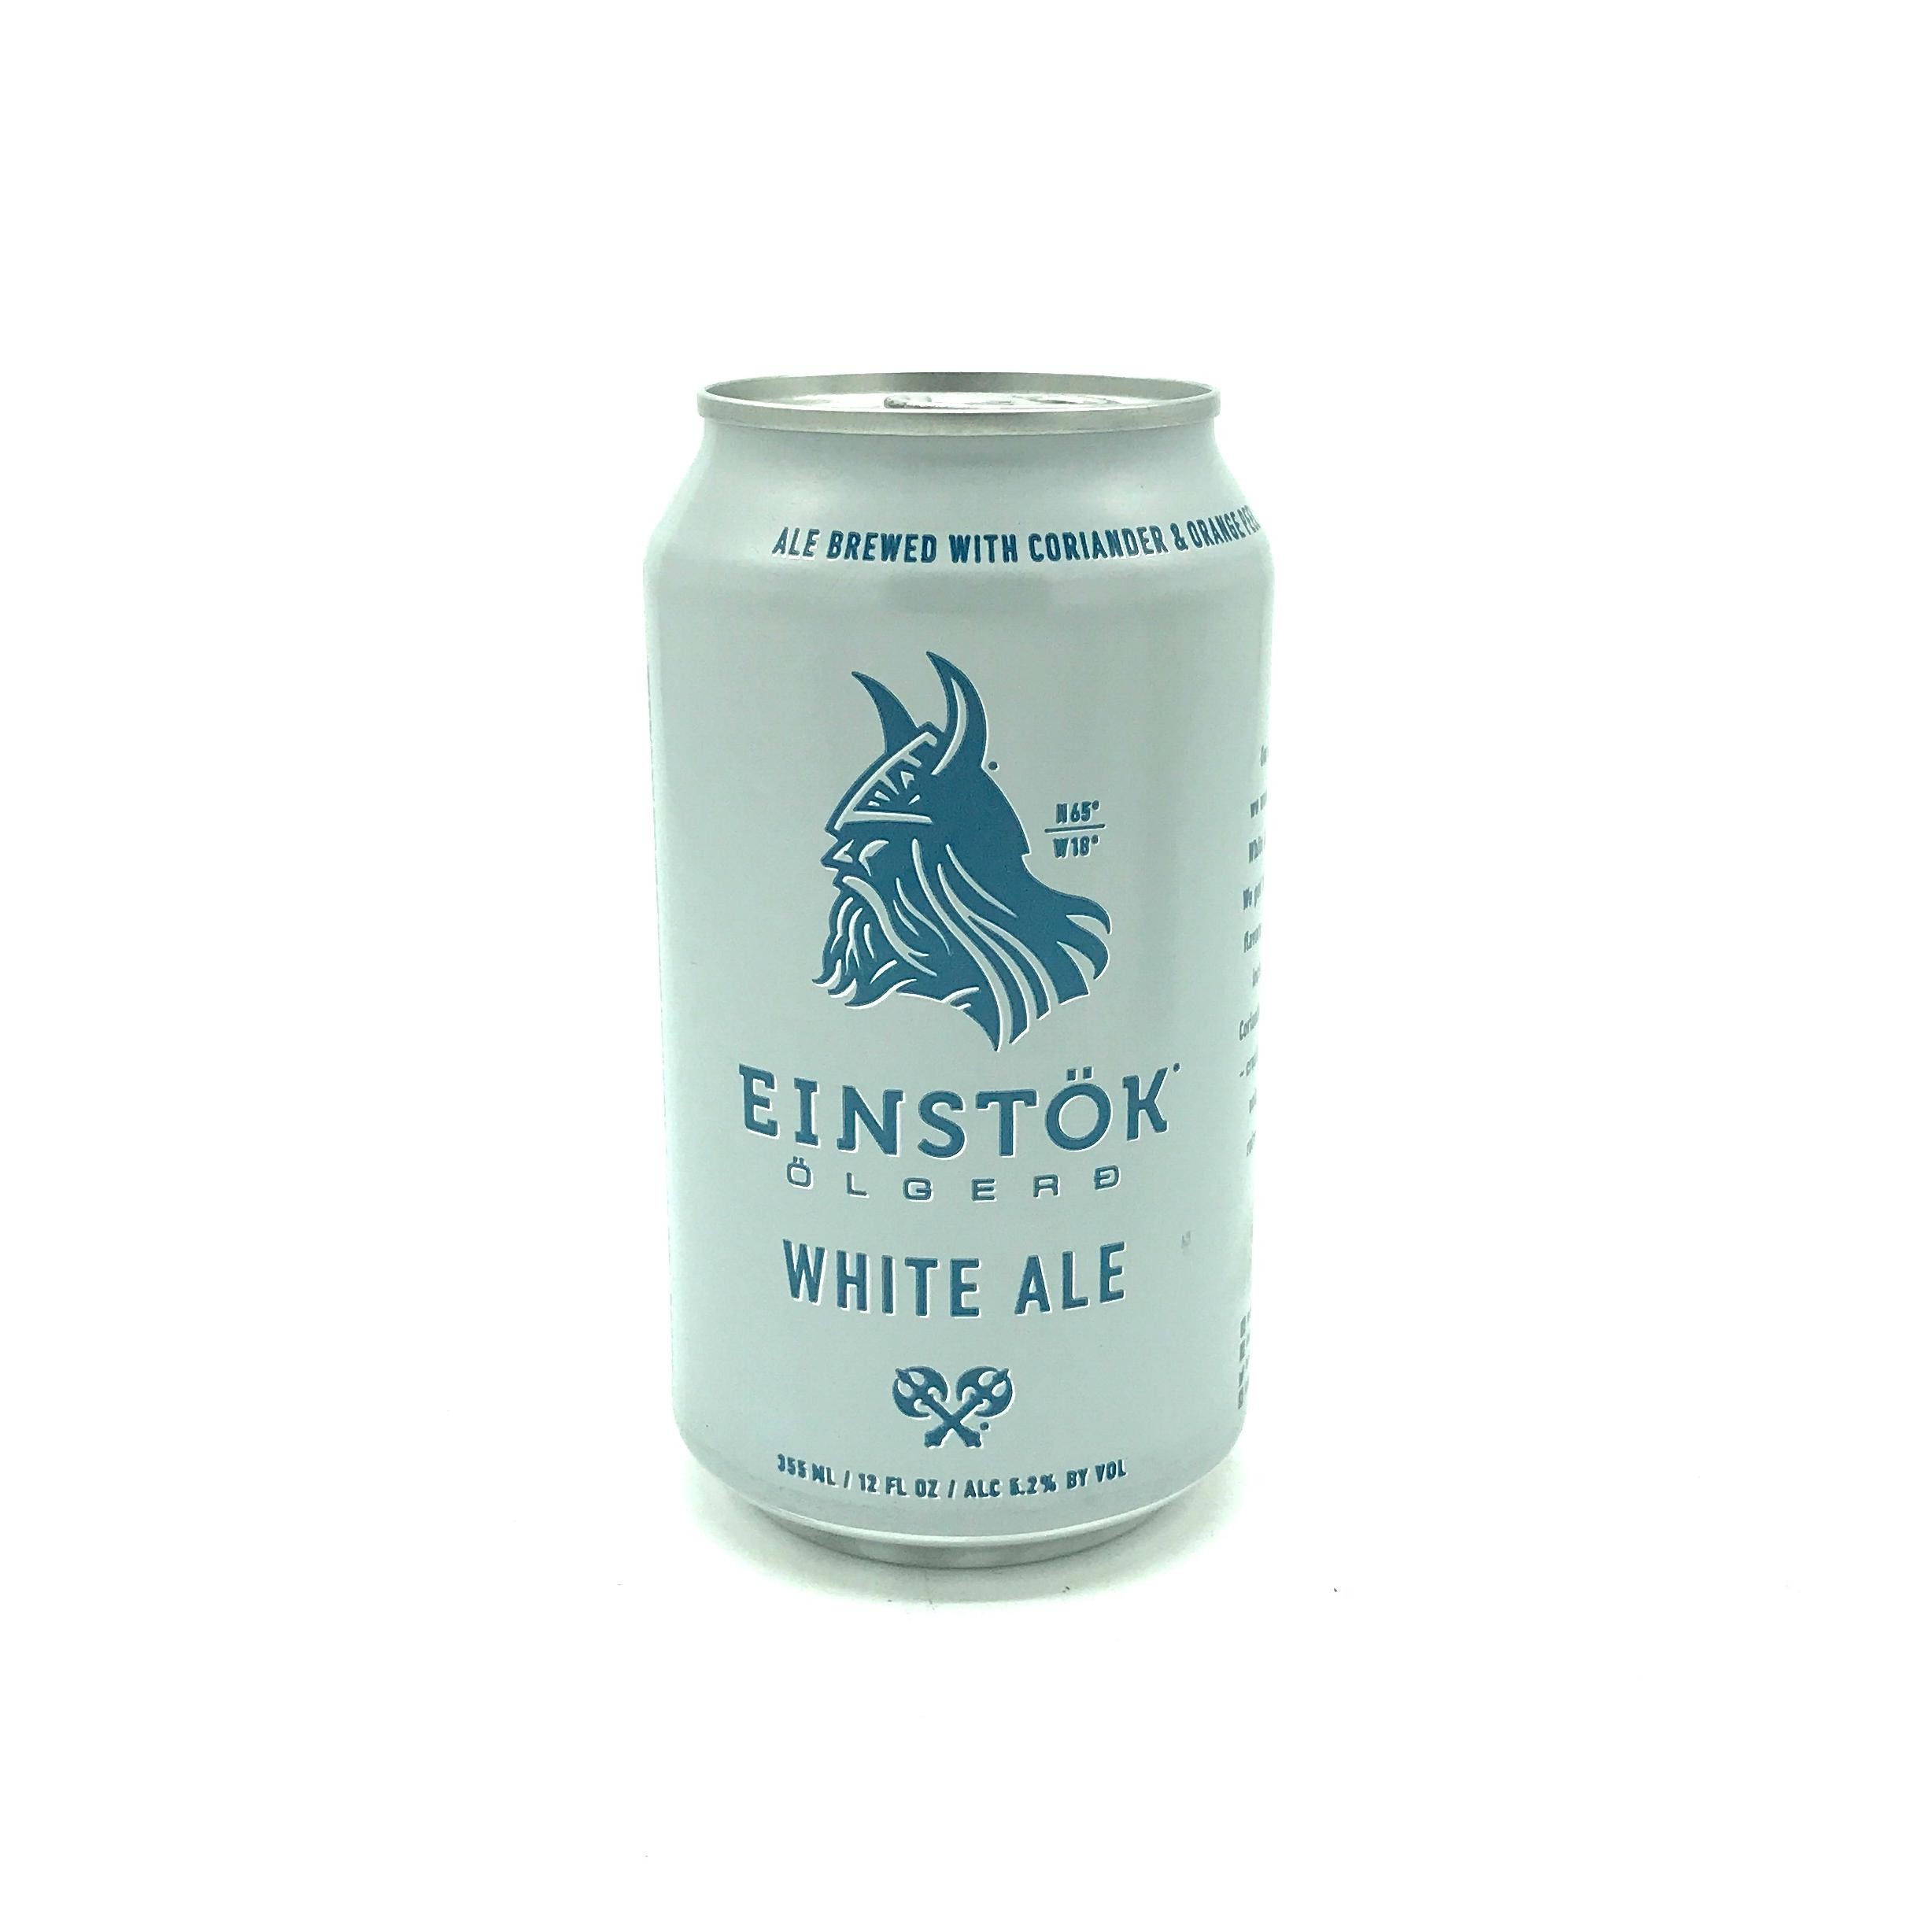 Einstök Ölgerð - Icelandic White Ale